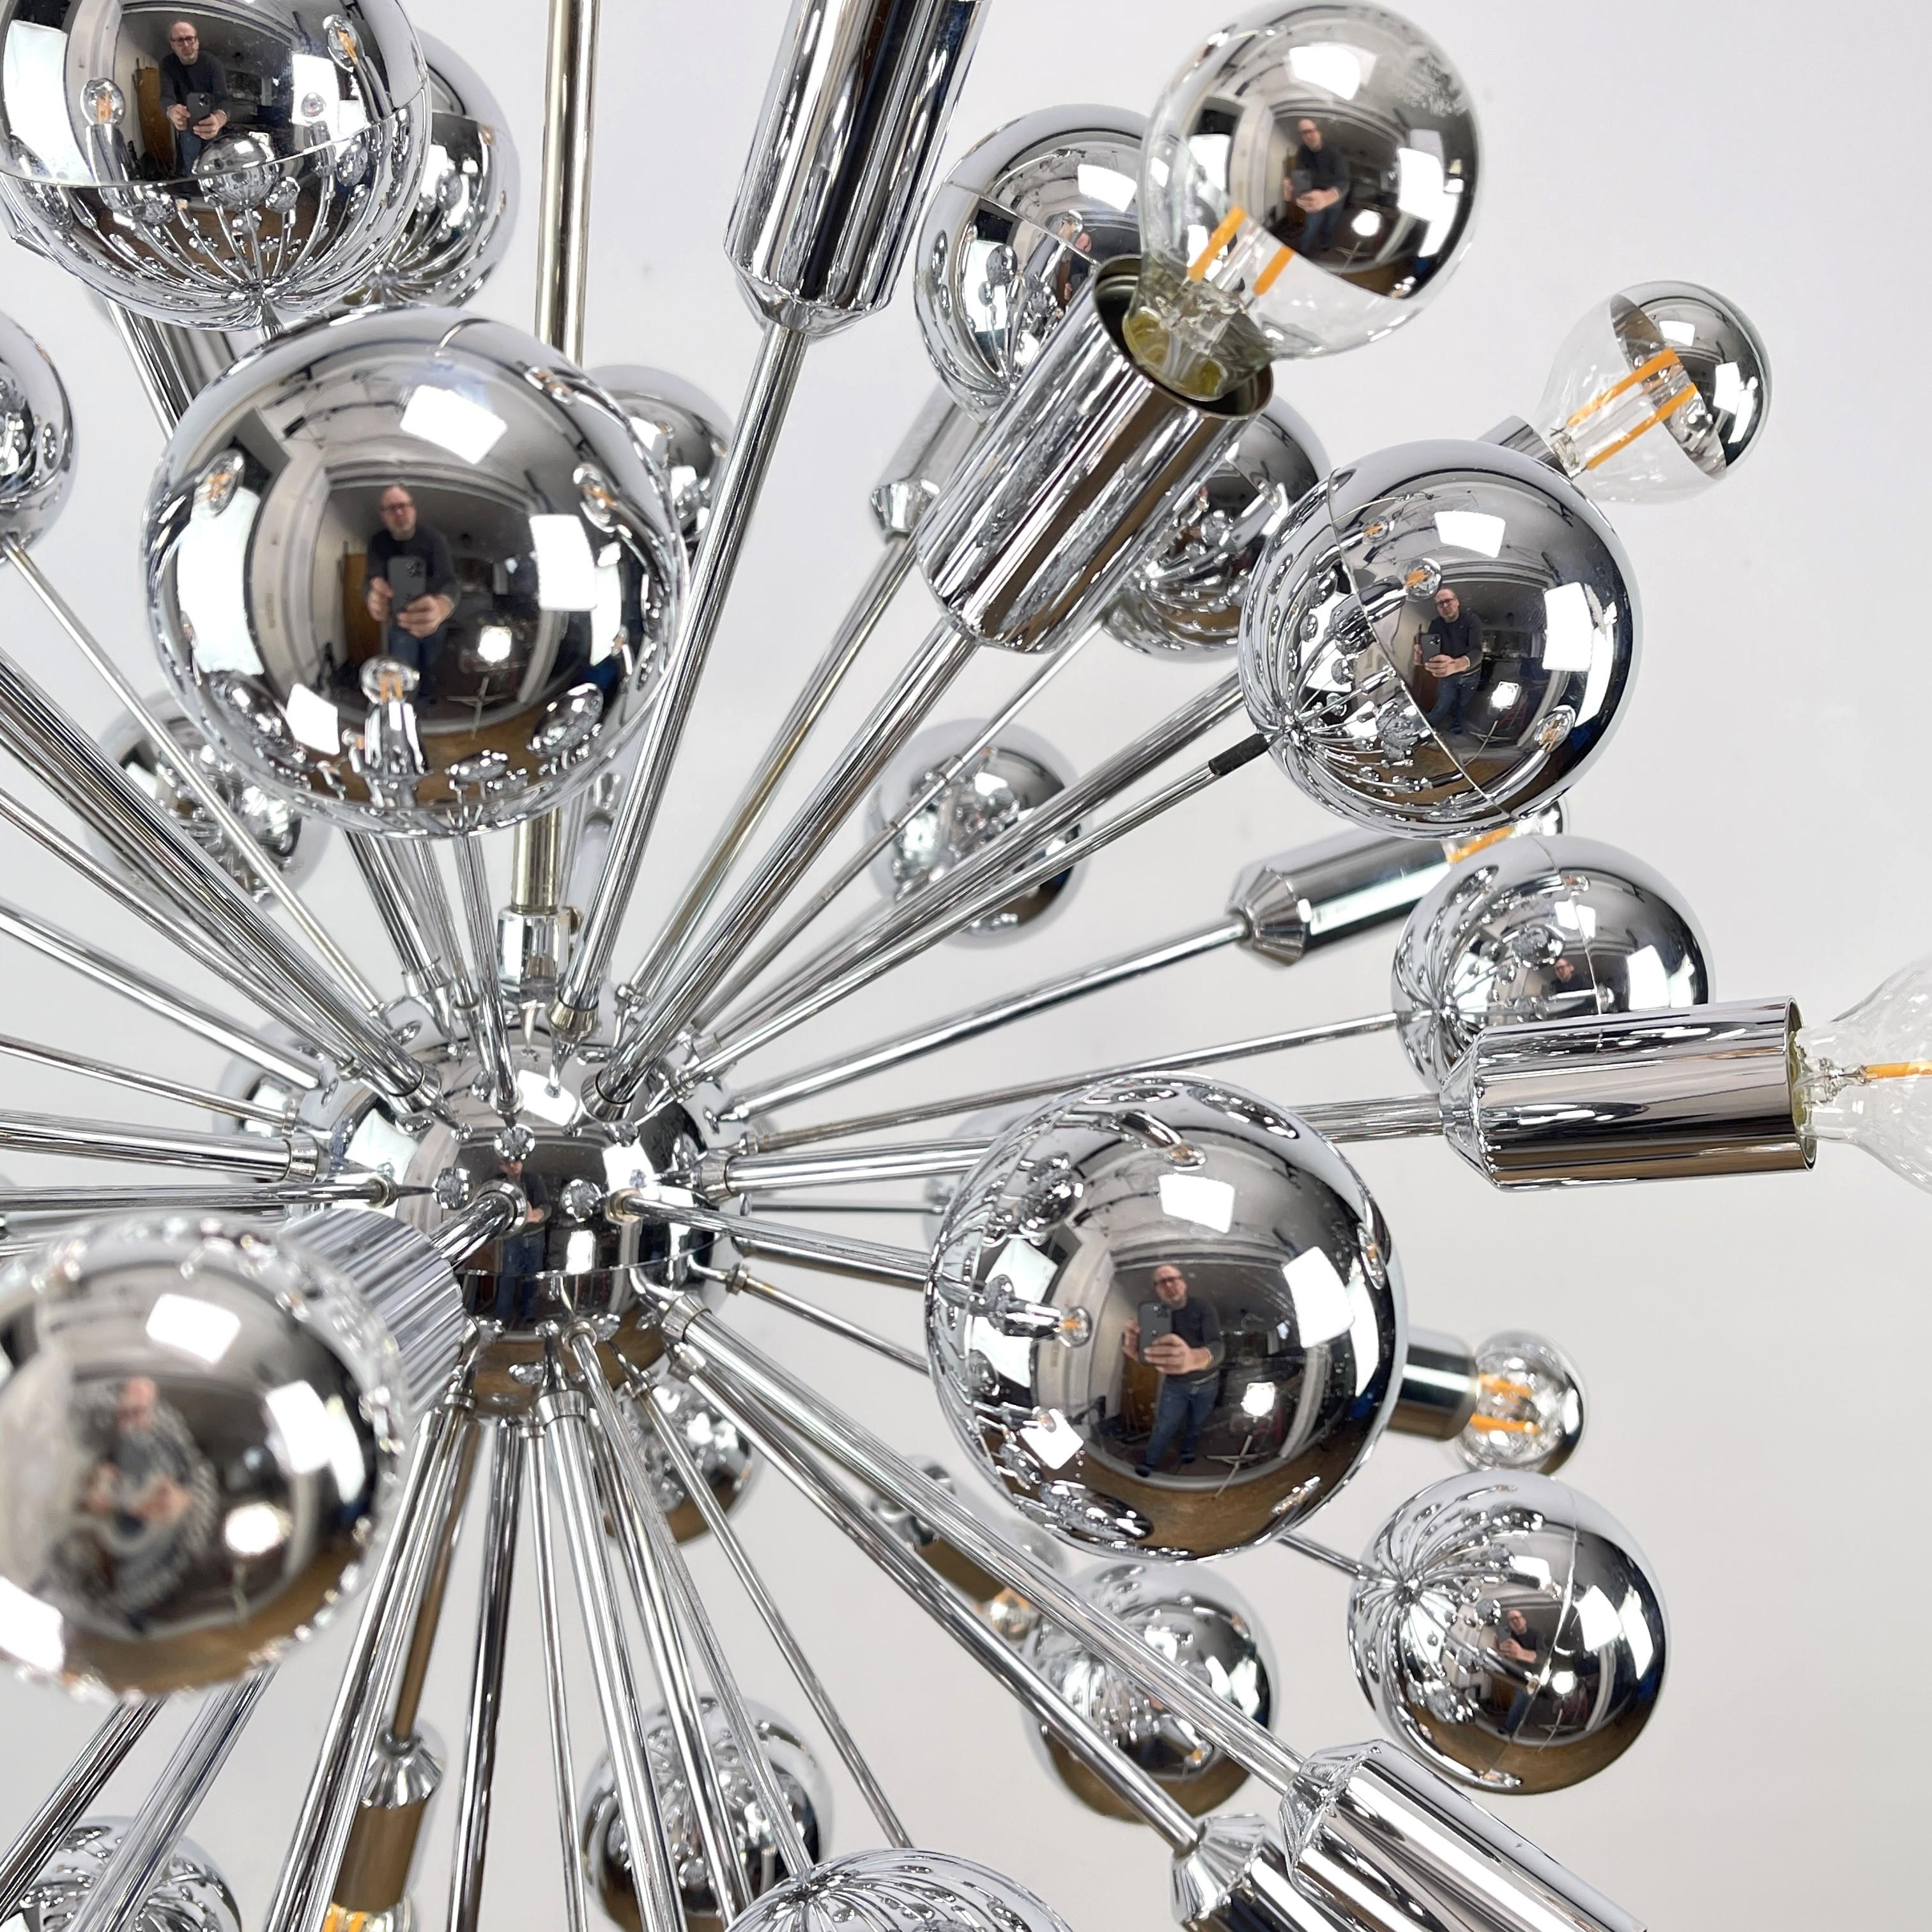 grand plafonnier Sputnik - années 1970

Cette élégante lampe chromée Sputnik des années 70 est une pièce de design intemporelle qui incarne parfaitement le charme et l'élégance de l'époque. Avec son design Sputnik saisissant, cette lampe attire tous